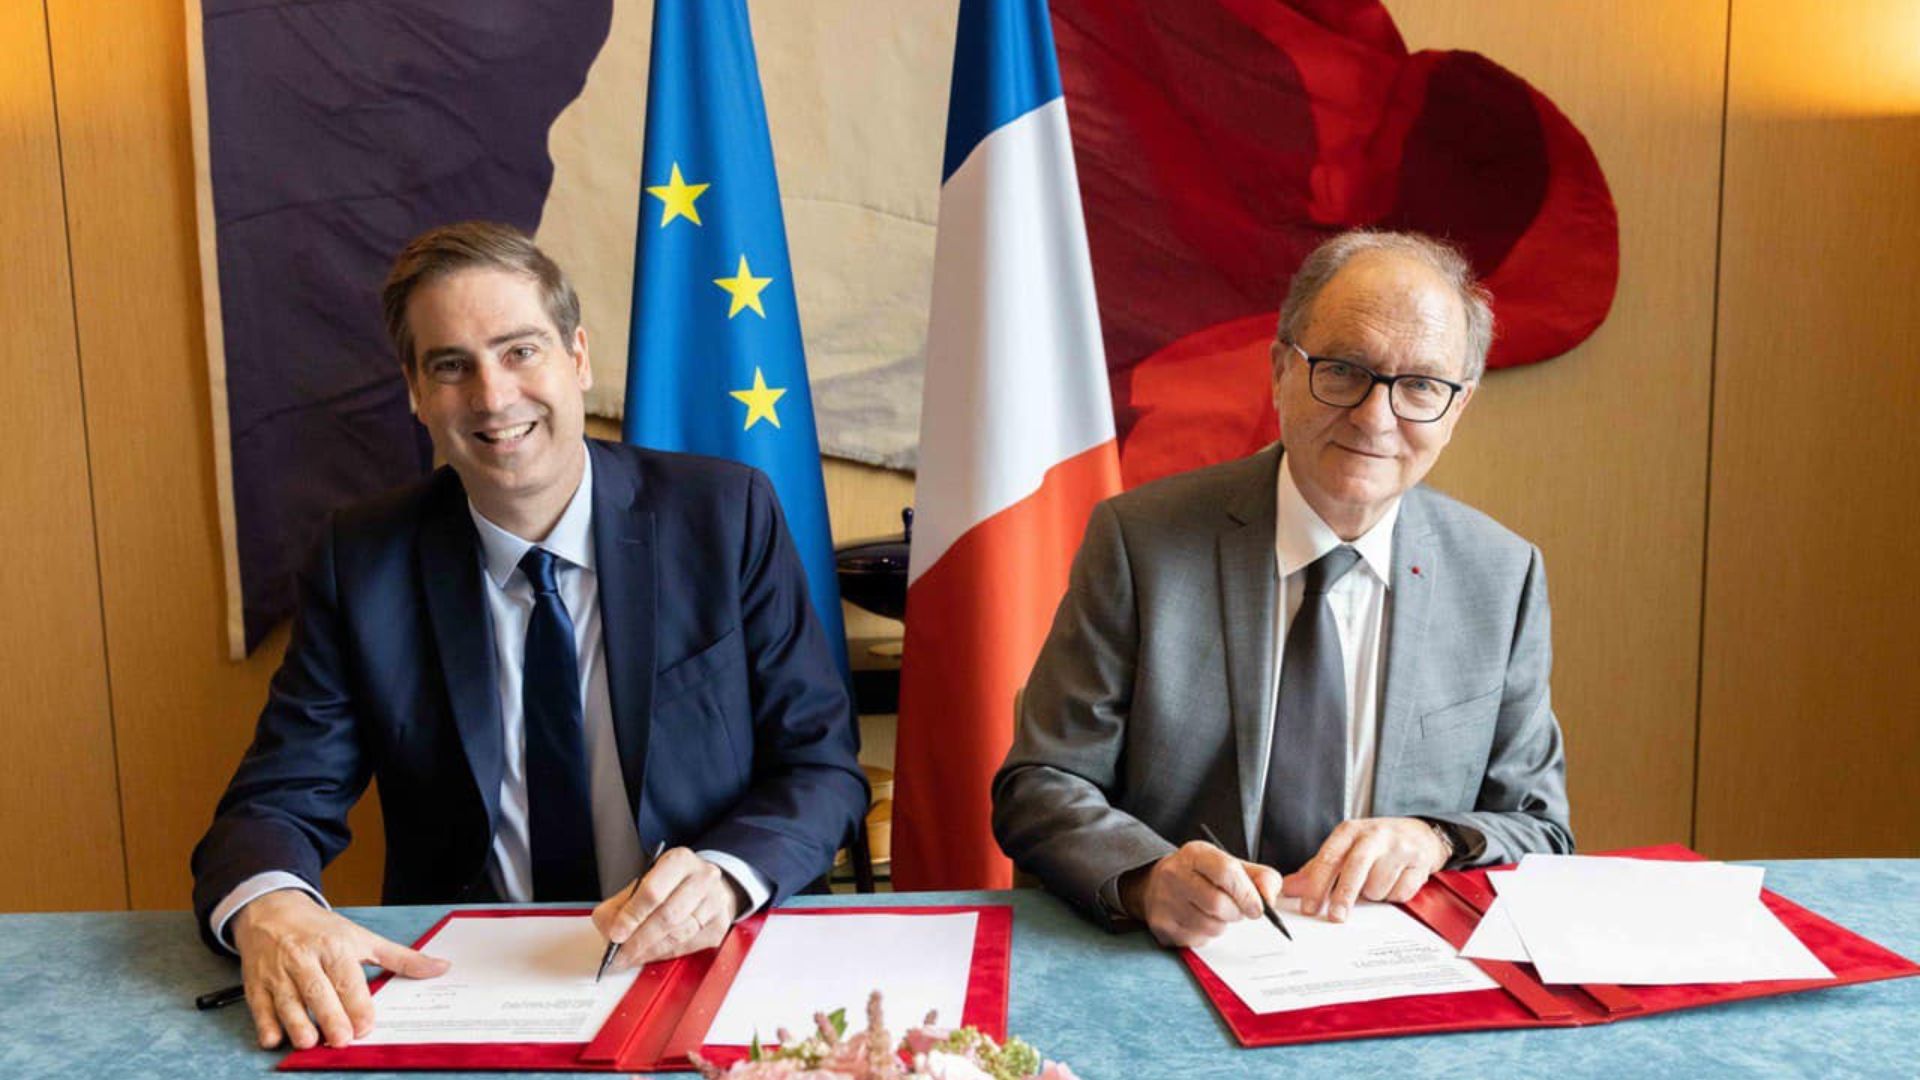 Le Ministère de l’Europe et des affaires étrangère renouvelle sa convention avec la Mission laïque française